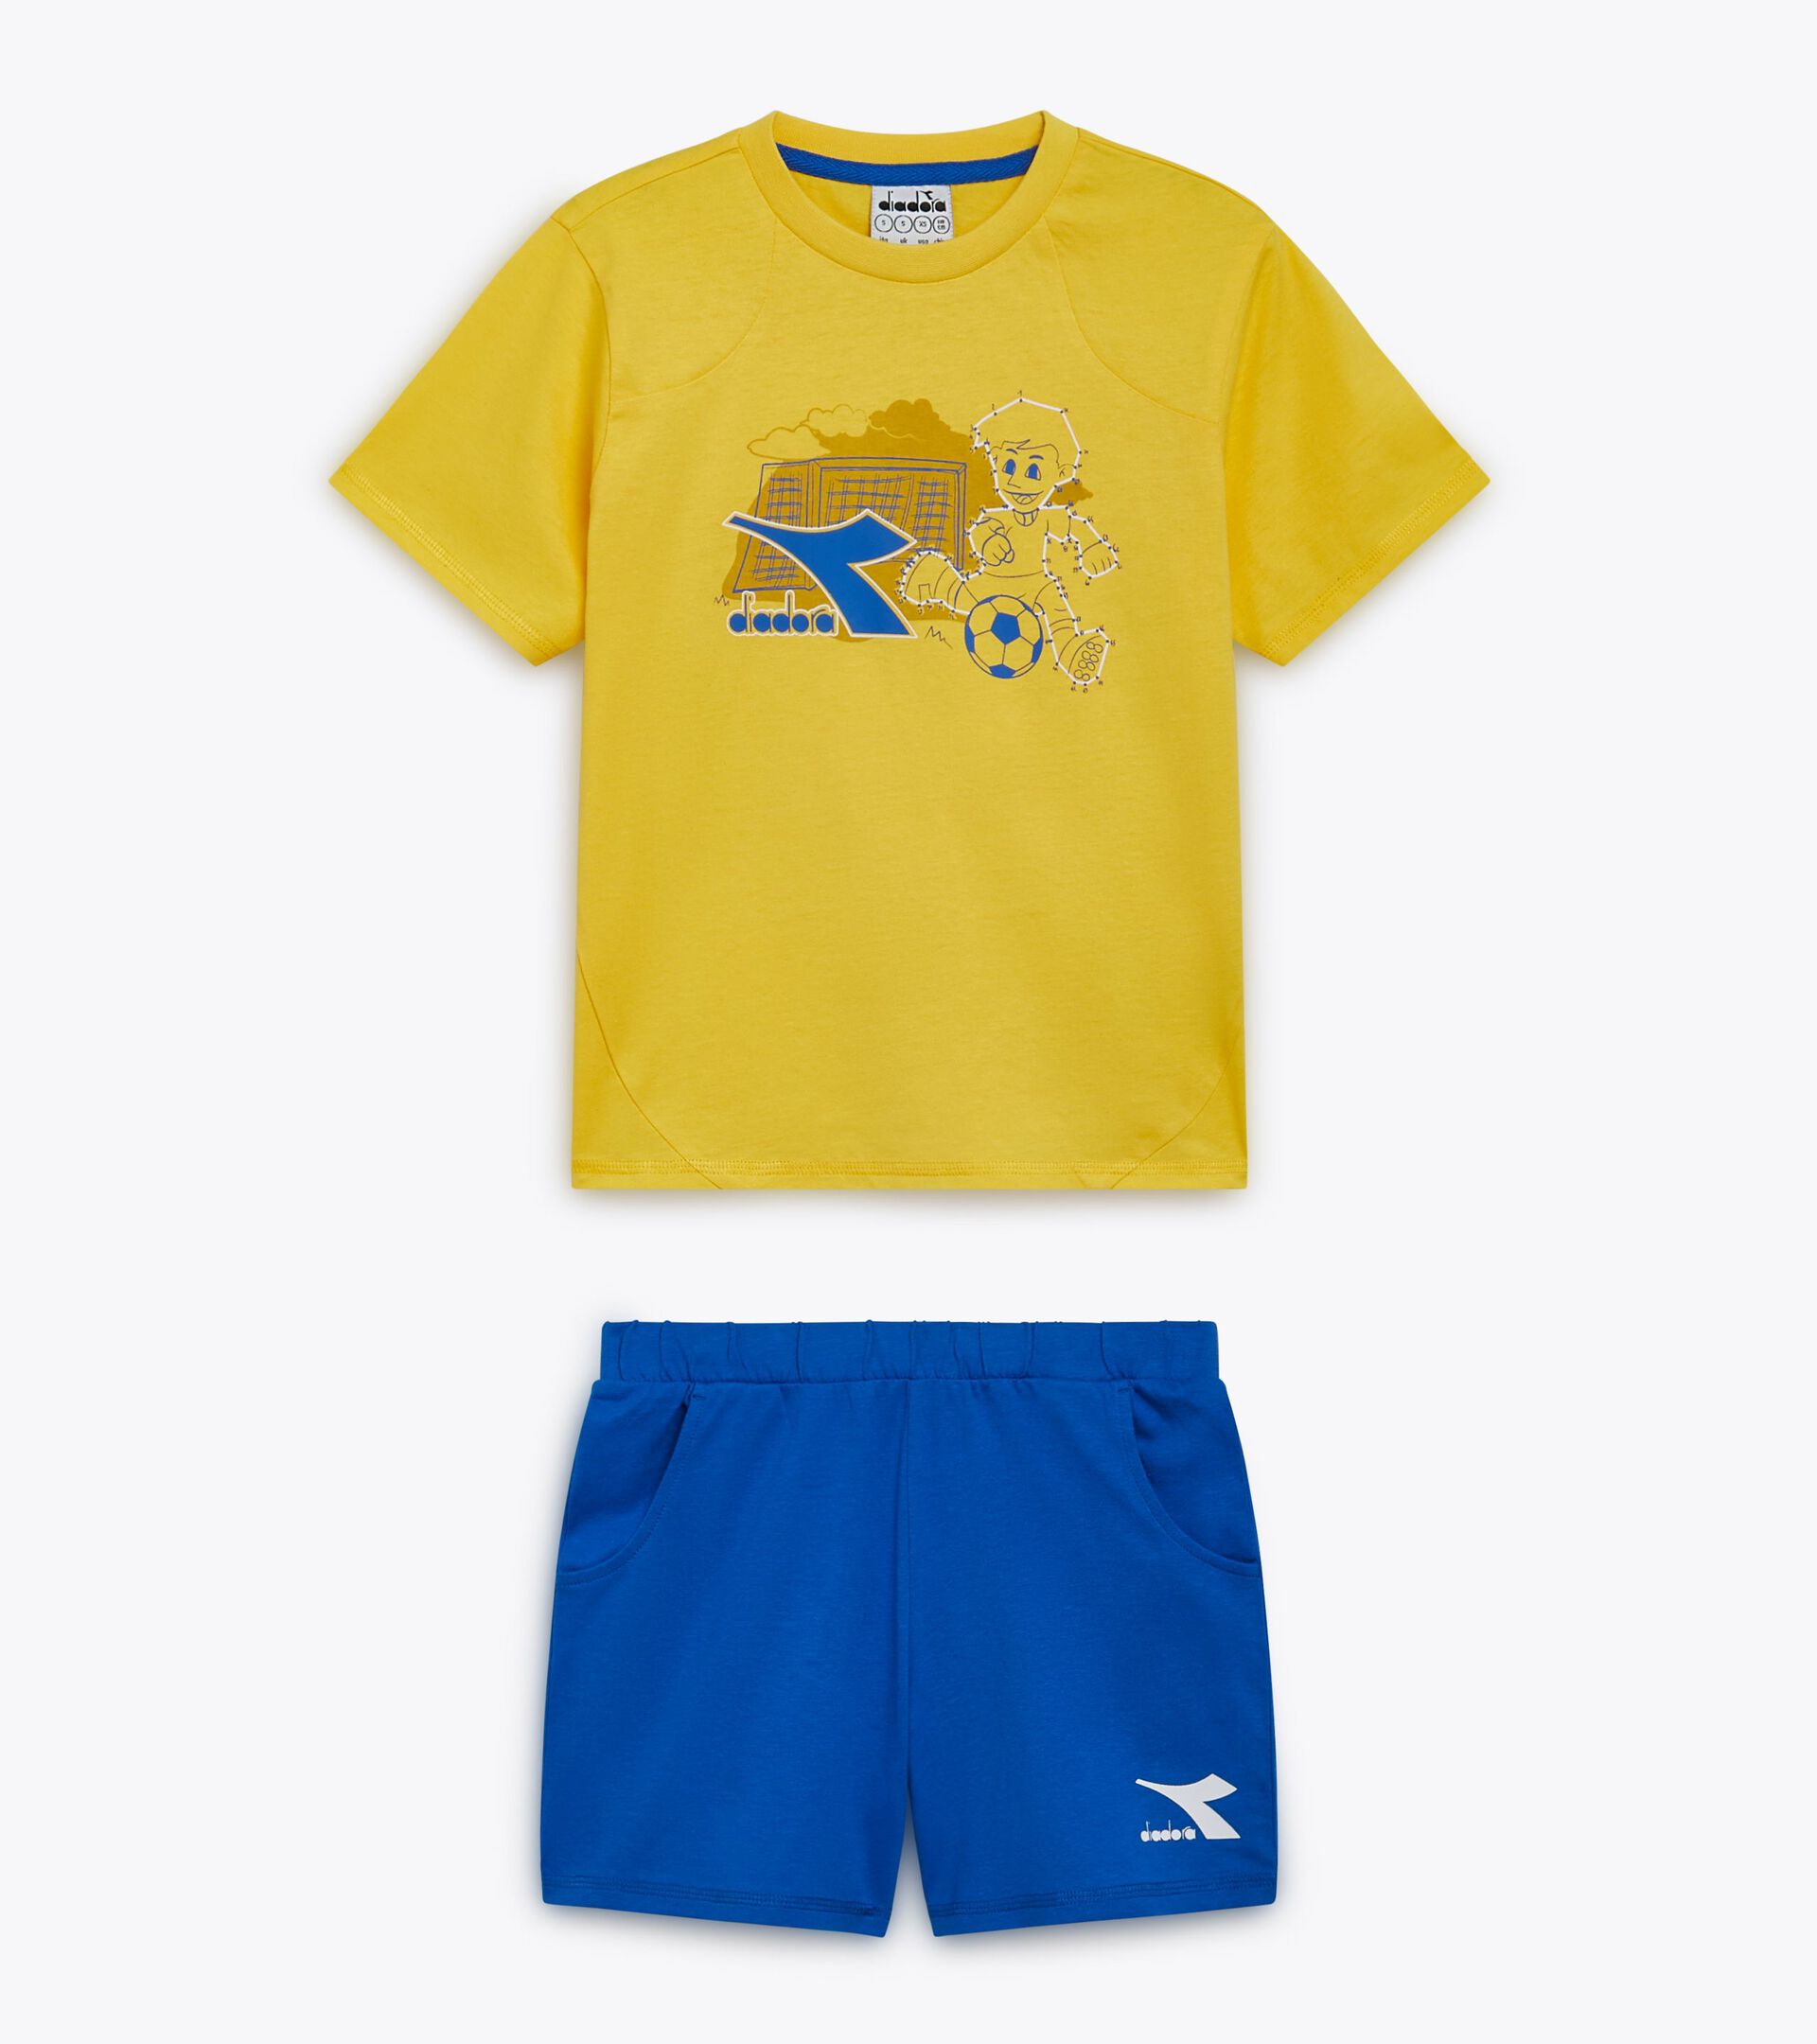 Conjunto deportivo - Camiseta y pantalones cortos - Niños y adolescentes
 JB. SET SS RIDDLE AMARILLO ALAMO TEMBLON OR - Diadora